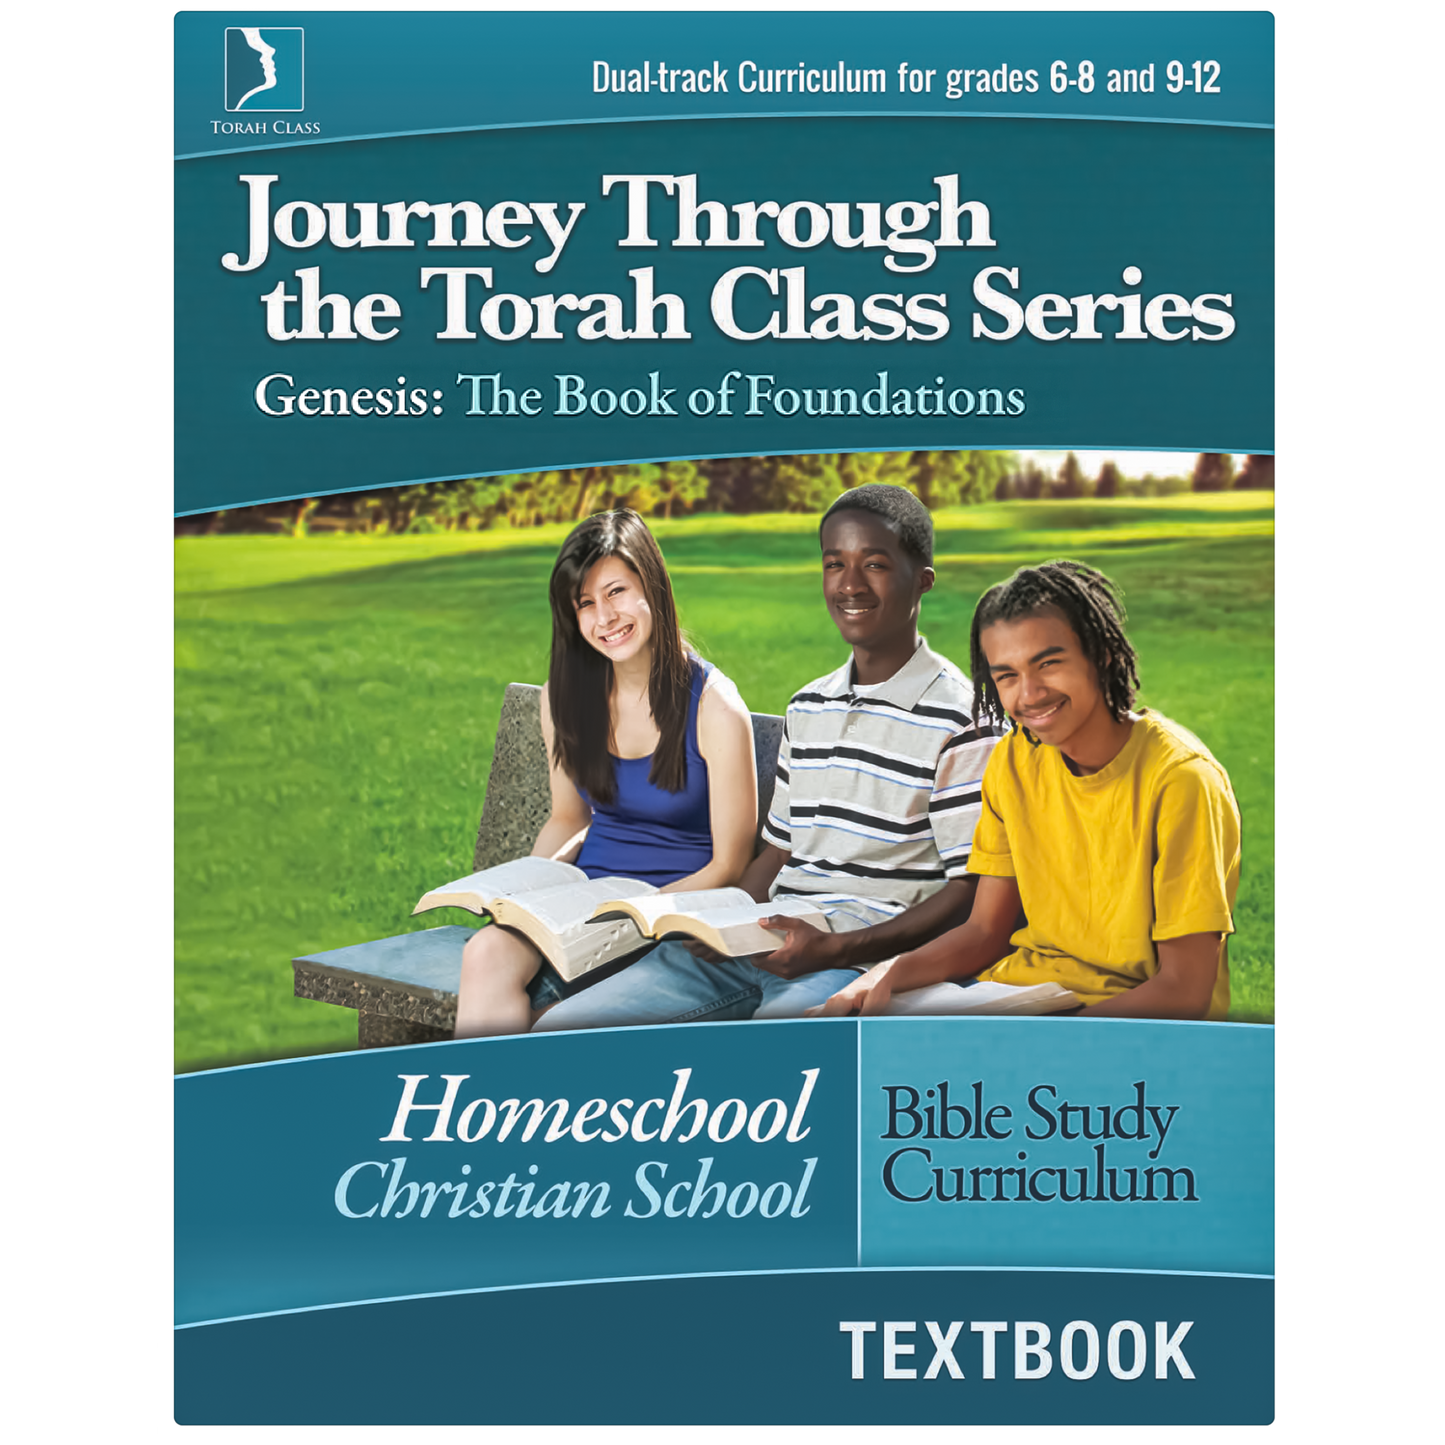 Tom Bradford Genesis Printed Version Homeschool Textbook